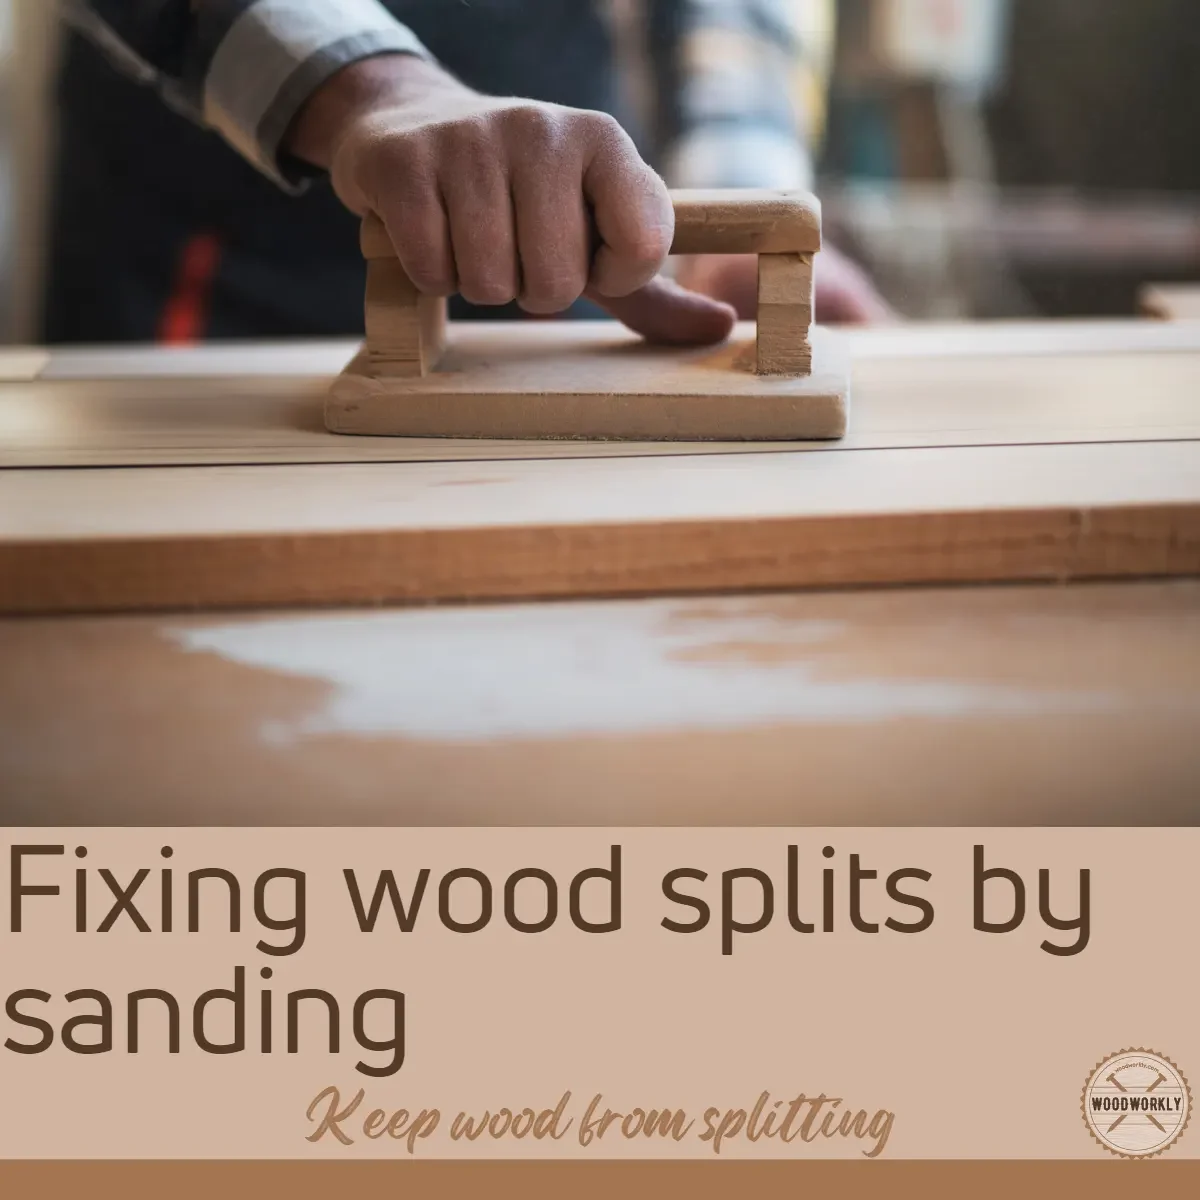 Fixing wood splits by sanding